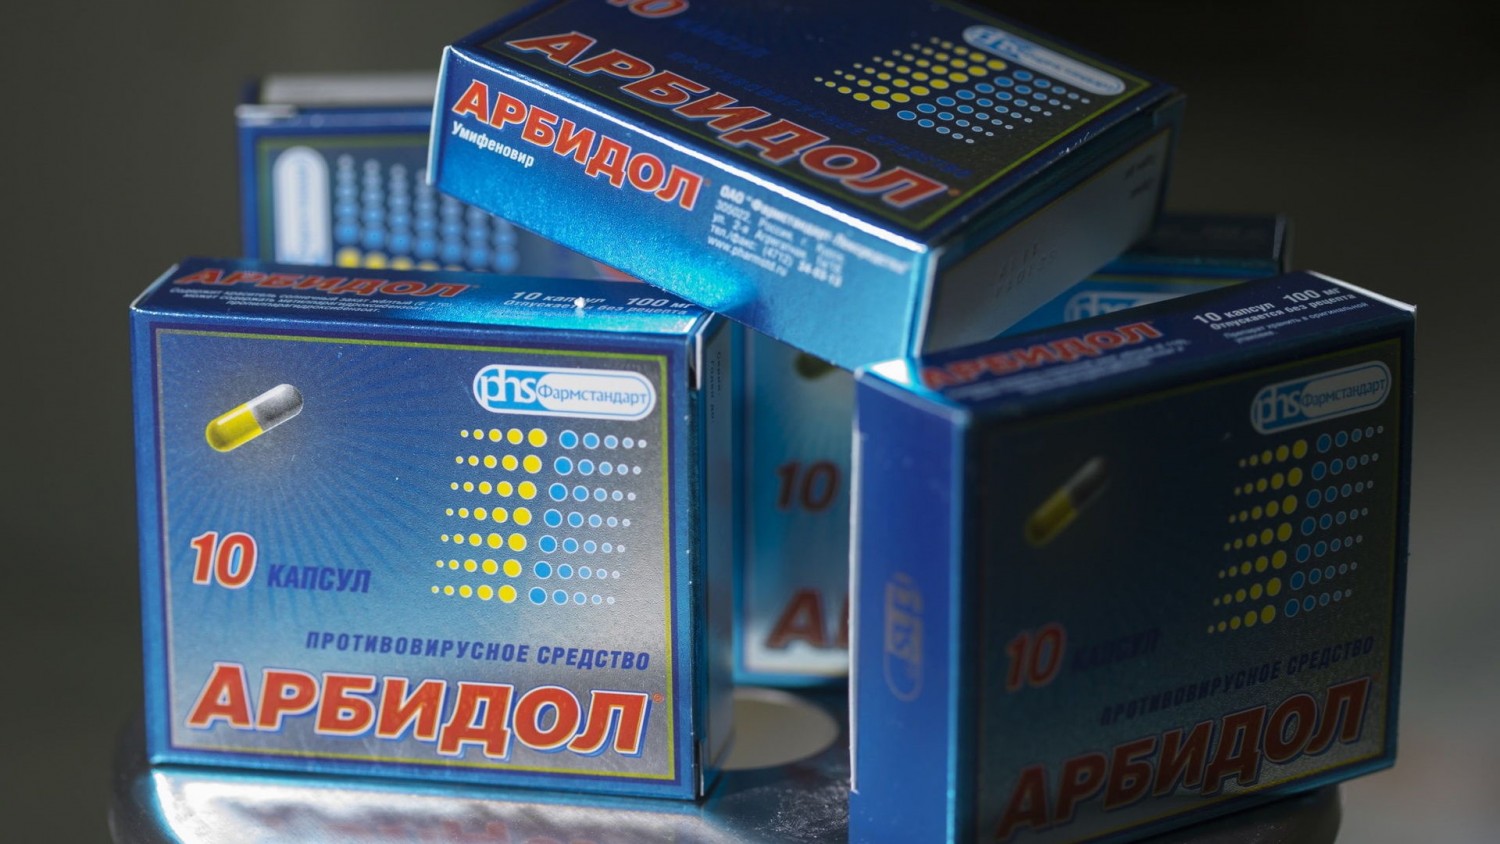 Россияне продают «Арбидол» на eBay, который якобы лечит от коронавируса. Площадка блокирует объявления